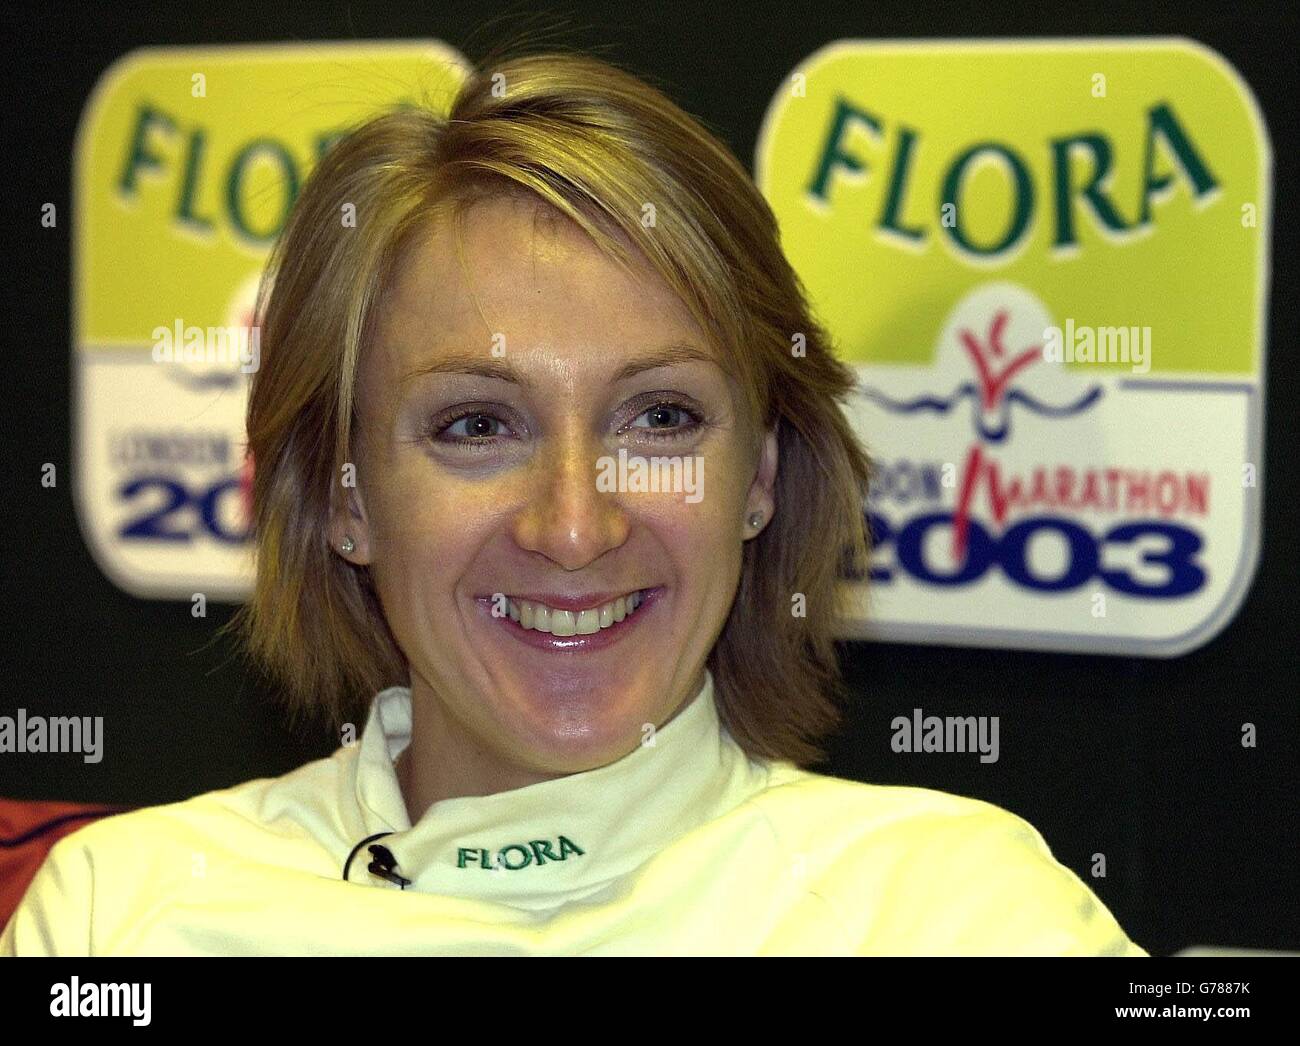 Athlet Paula Radcliffe bei einer Pressekonferenz in London Montag 5 Dezember 2002 bekannt zu geben, dass sie in der Flora London Marathon 2003 laufen. * Sie wurde am Sonntagabend zur Sportpersönlichkeit des Jahres ernannt, nachdem sie dieses Jahr gewonnen und später den Weltrekord der Frauen in Chicago gebrochen hatte, zusätzlich zu den Langdistanz-Goldmedaillen bei den Commonwealth- und Europameisterschaften. Stockfoto